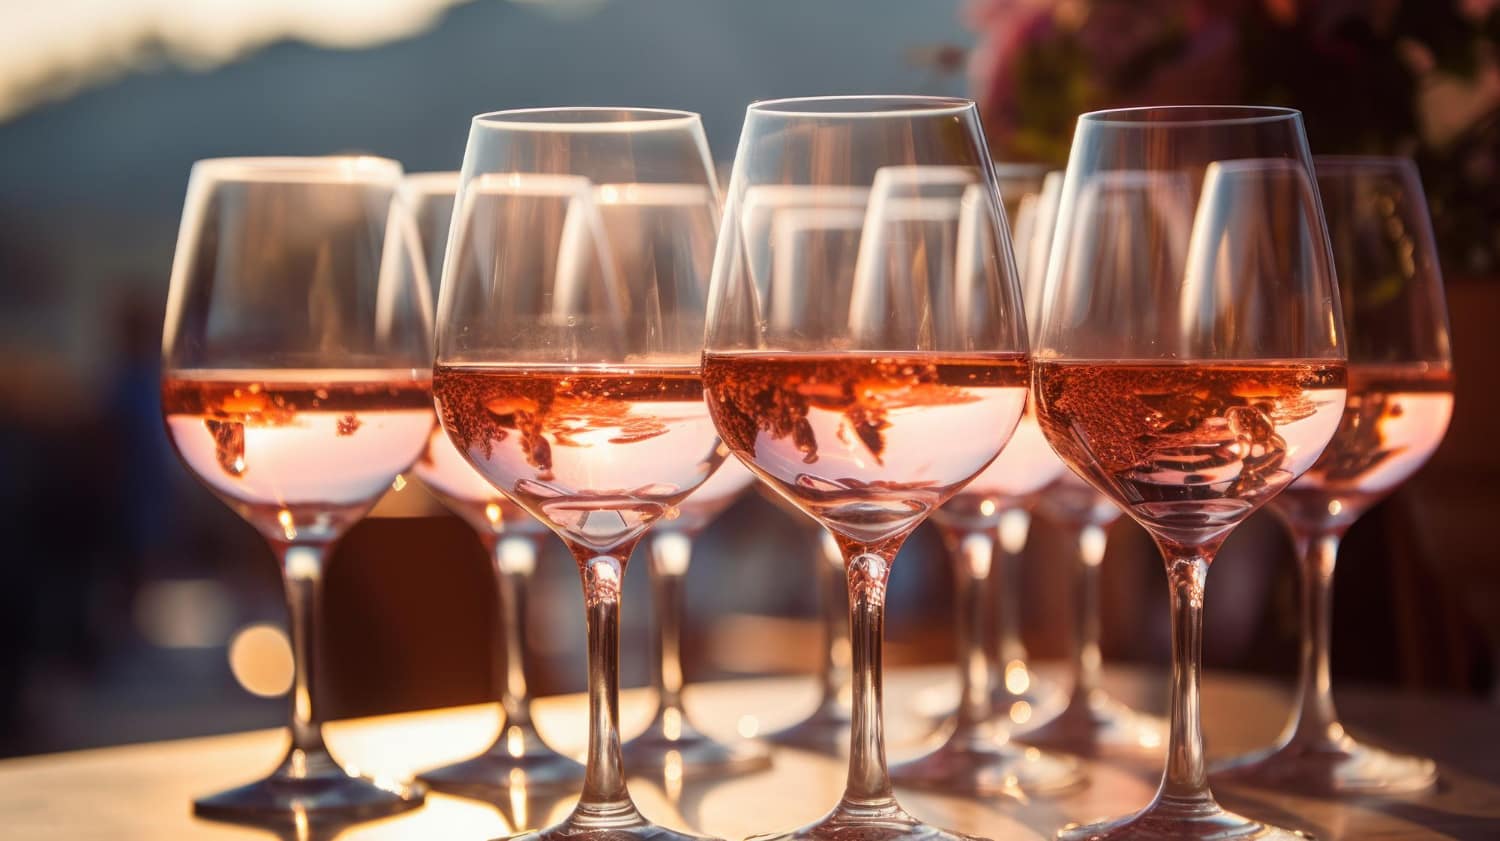 Imagen generada por IA que muestra una selección de copas con diferentes vinos rosados.